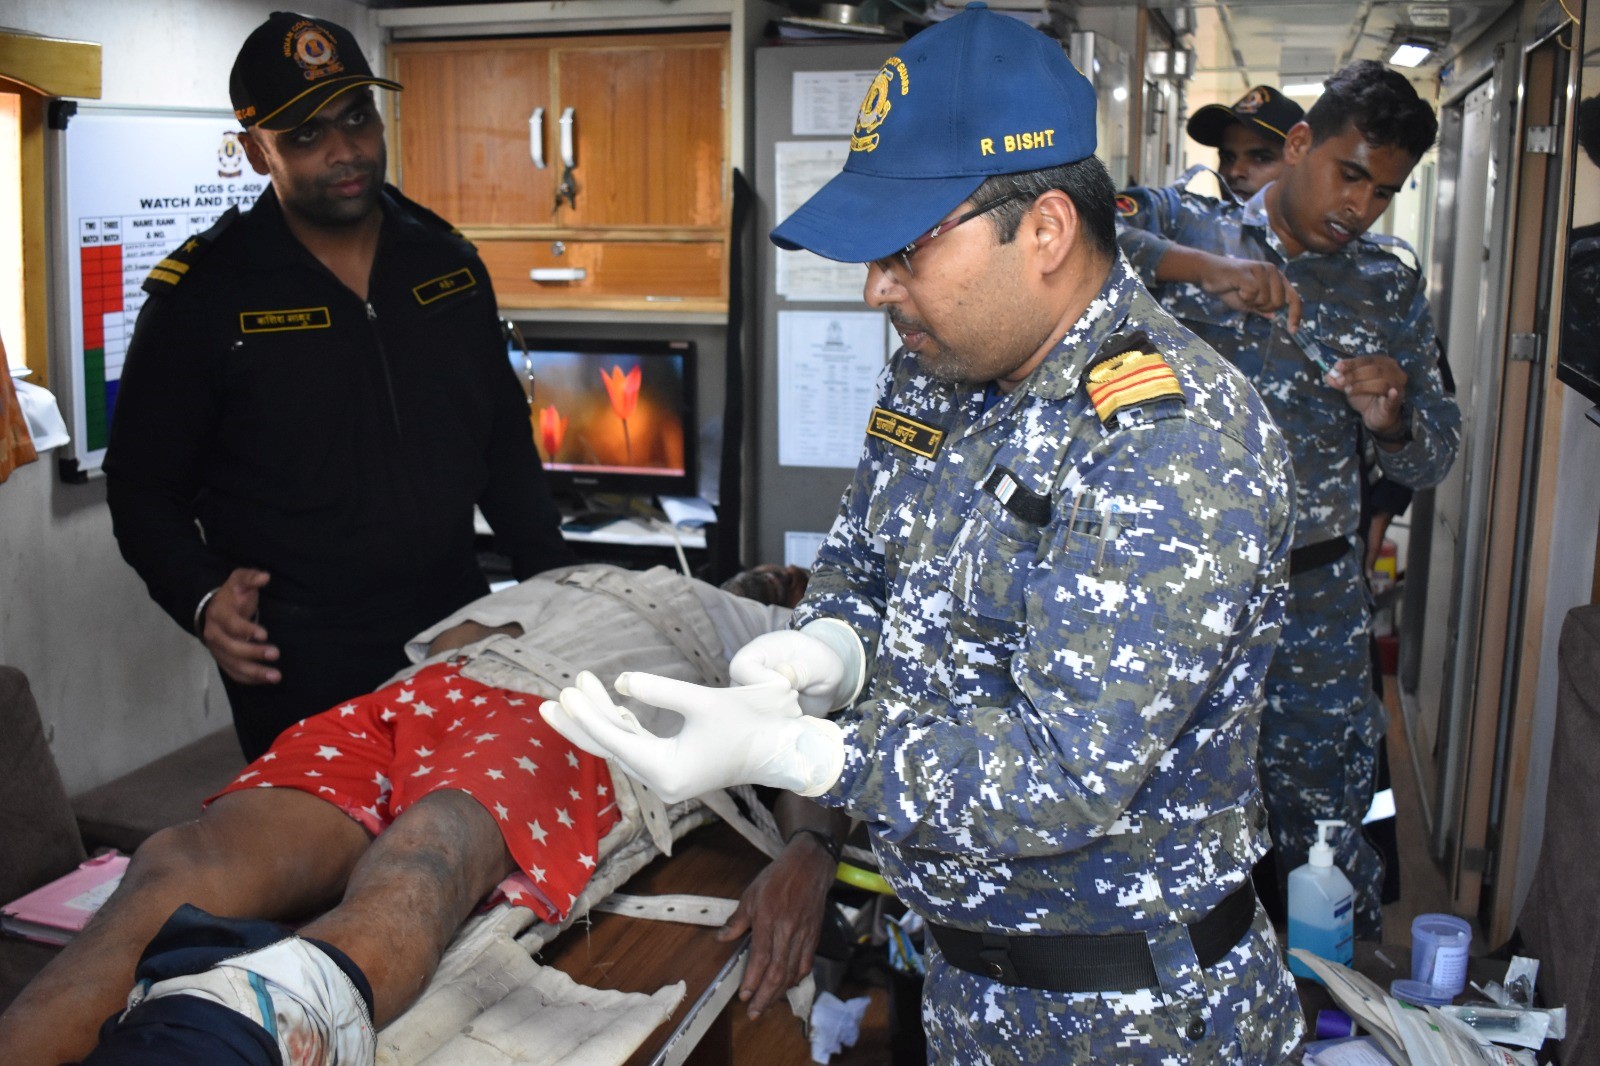 भारतीय तटरक्षक बल ने खंभात की खाड़ी में मतिउरुक नाव से गंभीर रूप से घायल चालक दल के सदस्य को सुरक्षित बचाया।